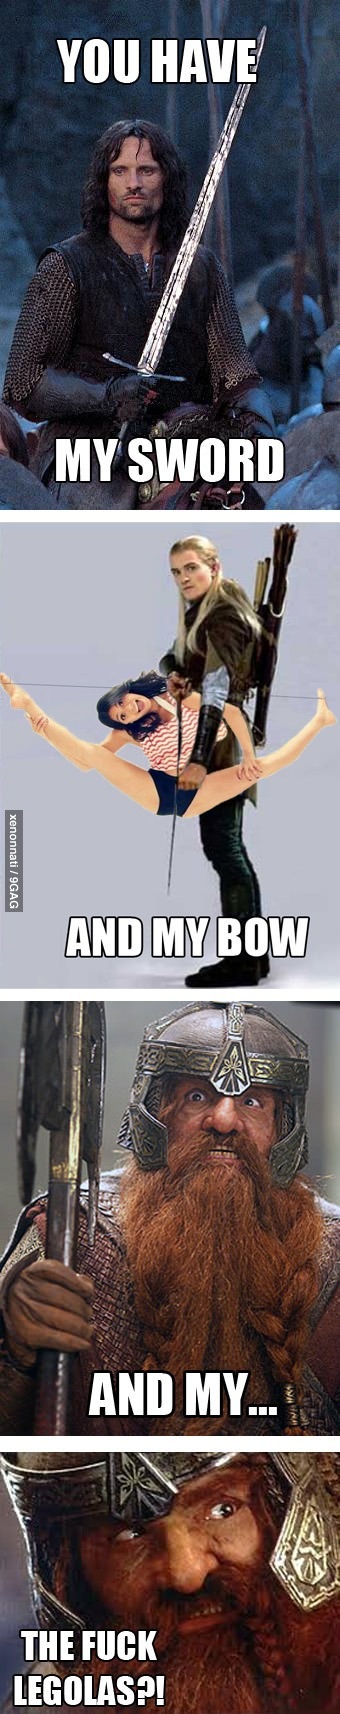 Legolas has a new bow